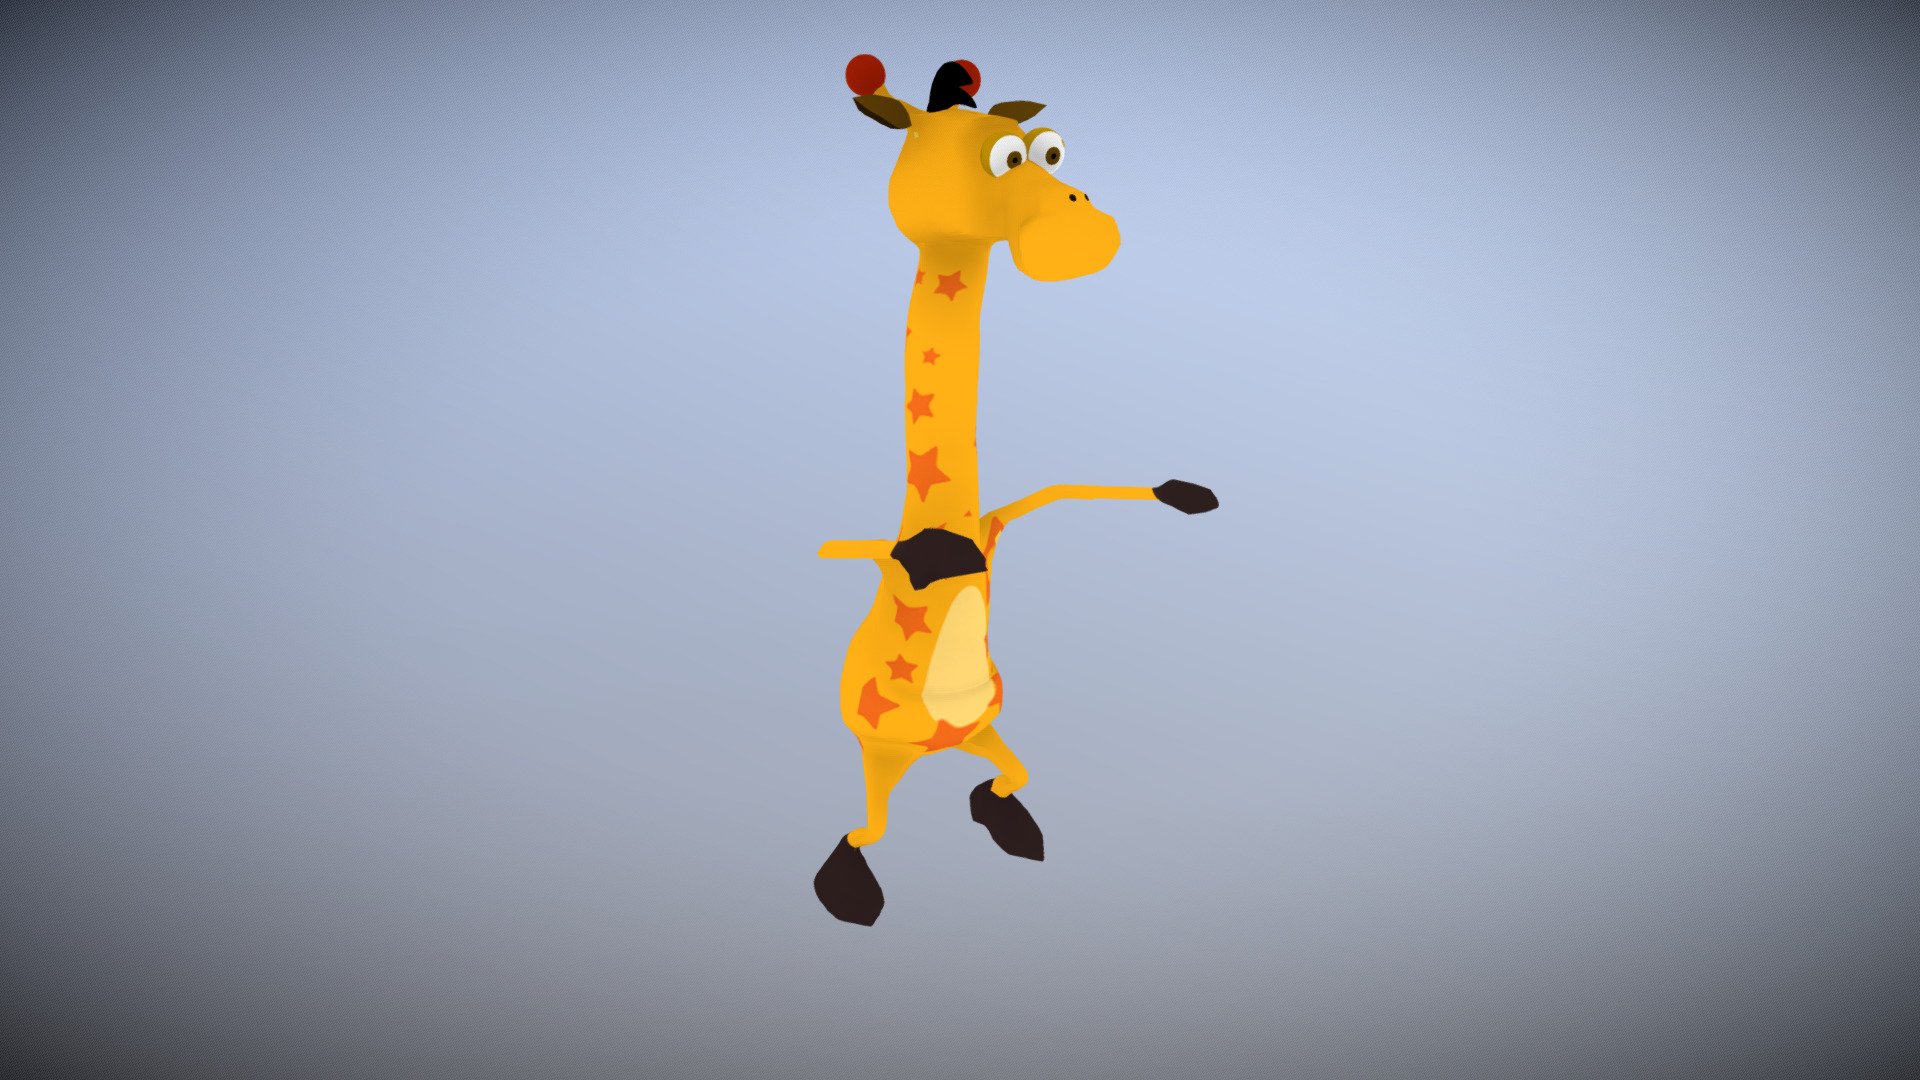 geoffrey the giraffe (toys r us) animated